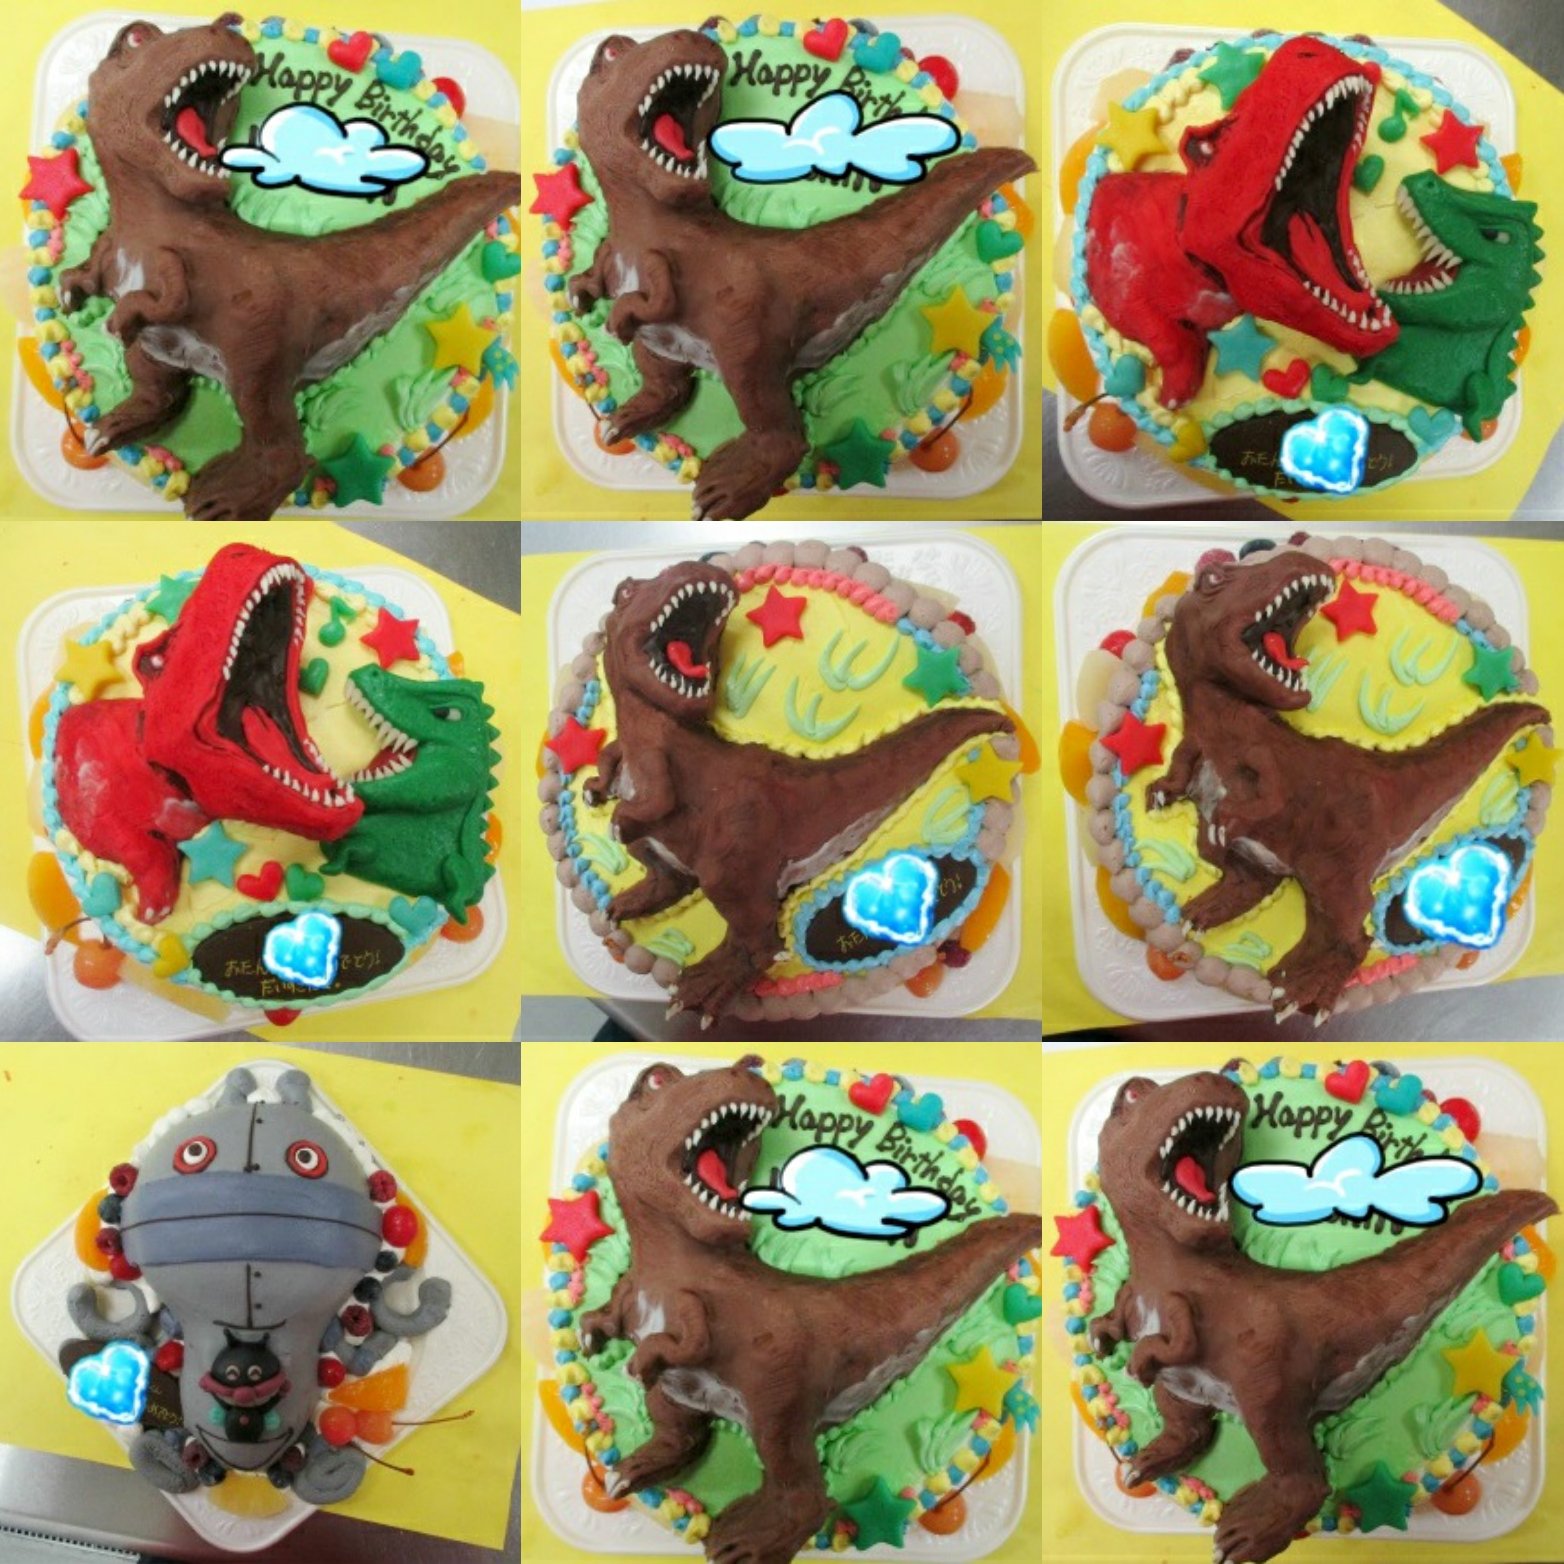 ケーキのはりまや Twitterren ケーキのはりまやです 恐竜ケーキ のご注文を頂きました ありがとうございます 何故かアンパンマンに出てくるだだんだんも居ますが ティラノサウルスかっこいい 恐竜 ティラノサウルス 立体ケーキ 恐竜ケーキ お誕生日 記念日